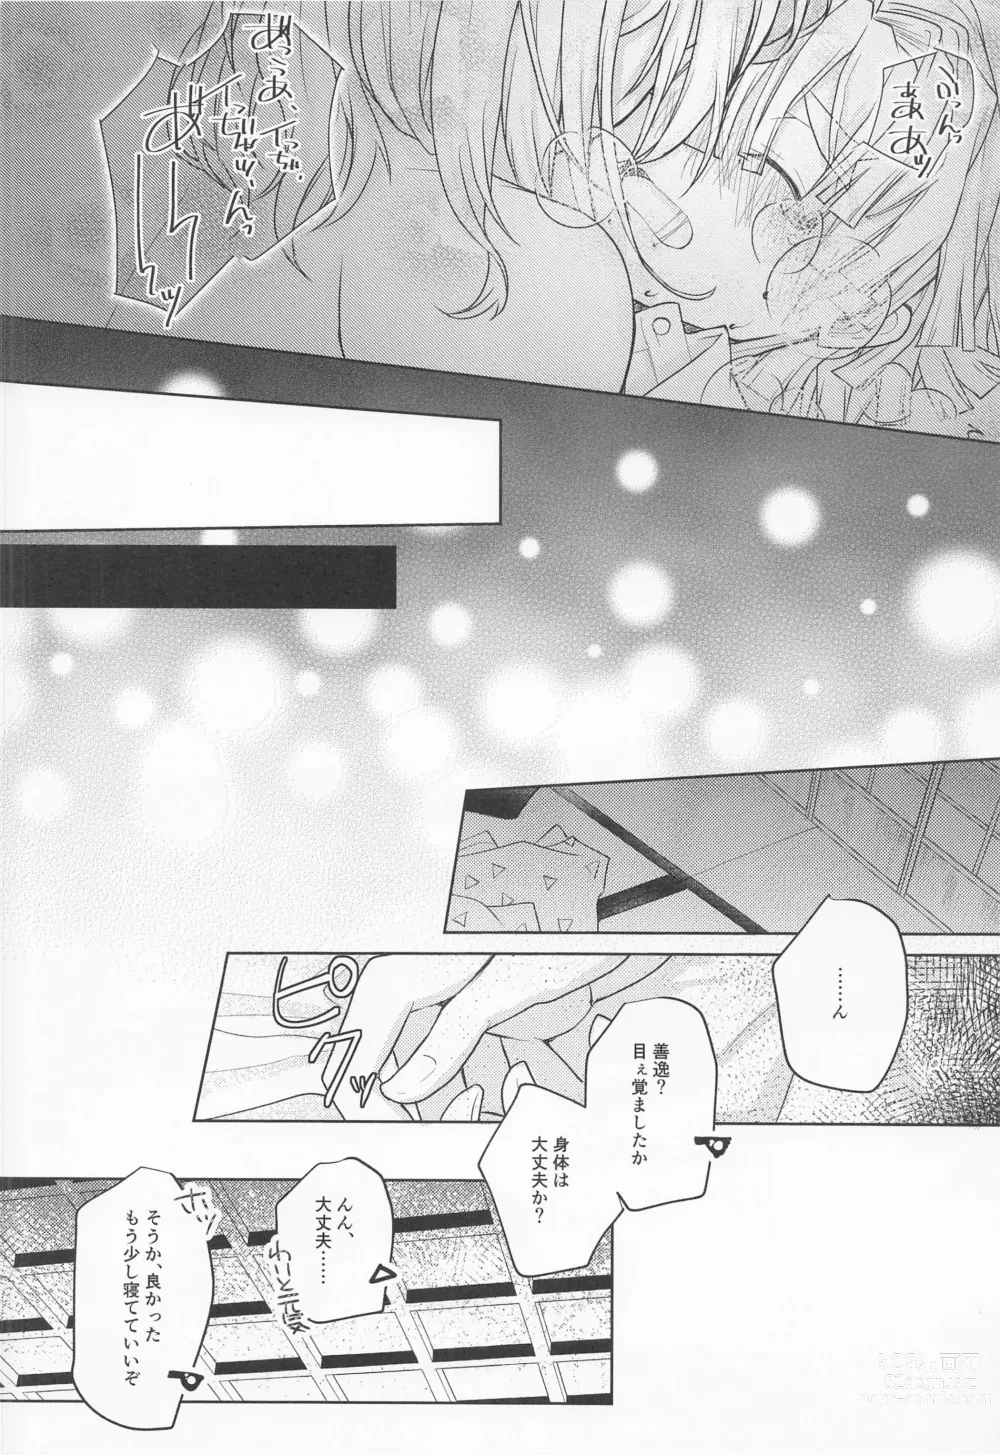 Page 39 of doujinshi Ai Mite no